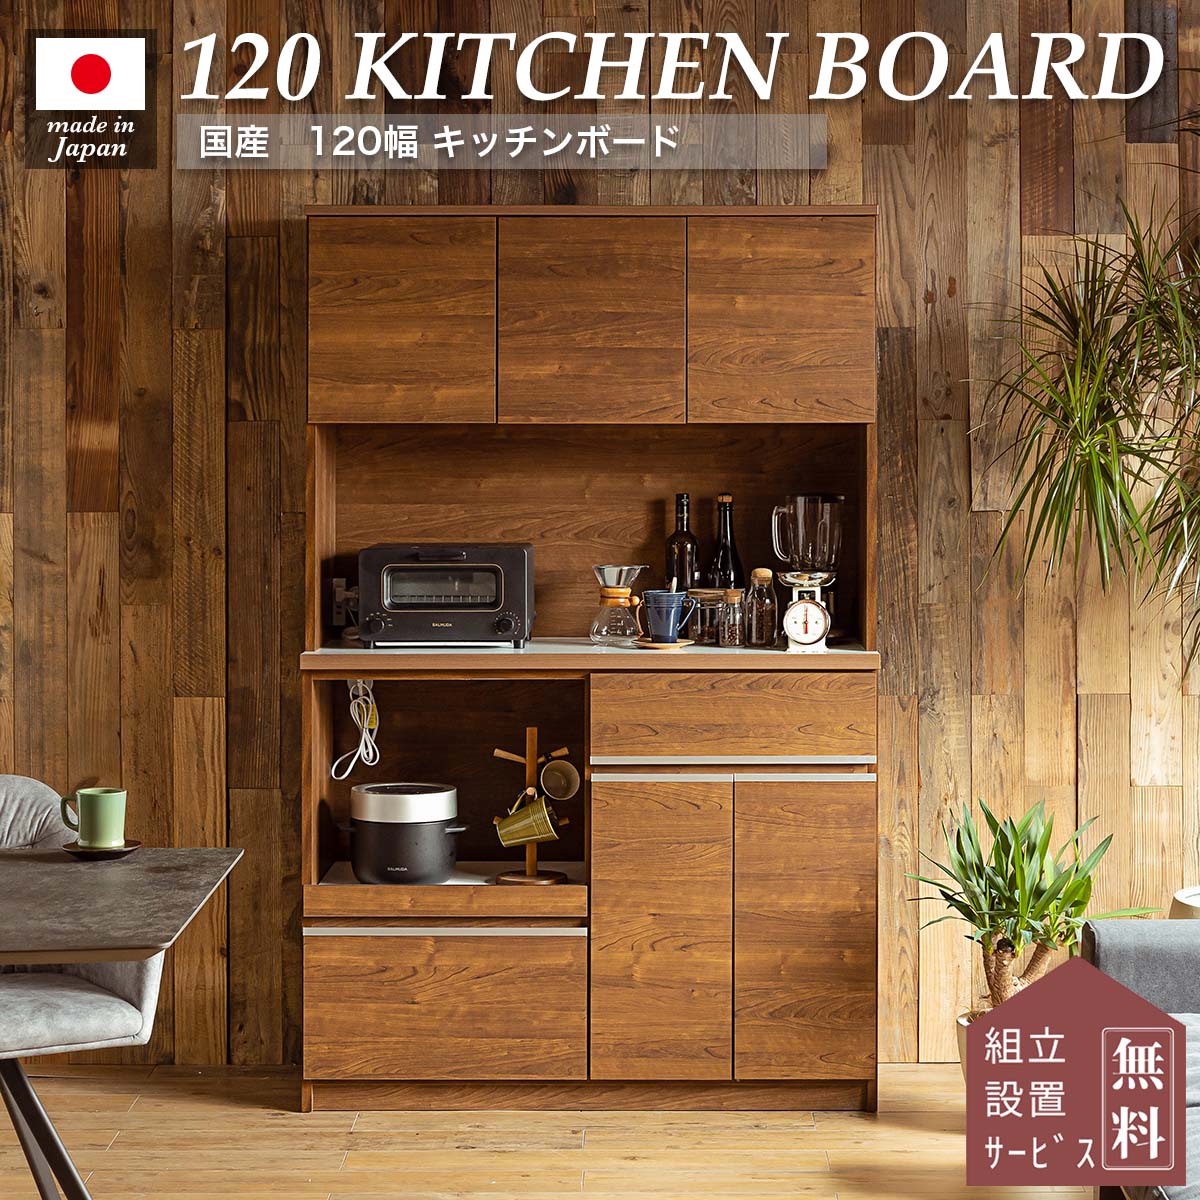 食器棚 キッチンボード ダイニングボード レンジボード キッチン棚 レンジ台 おしゃれ 幅120 木製 ハイタイプ 日本製 ウォールナット ブラウン